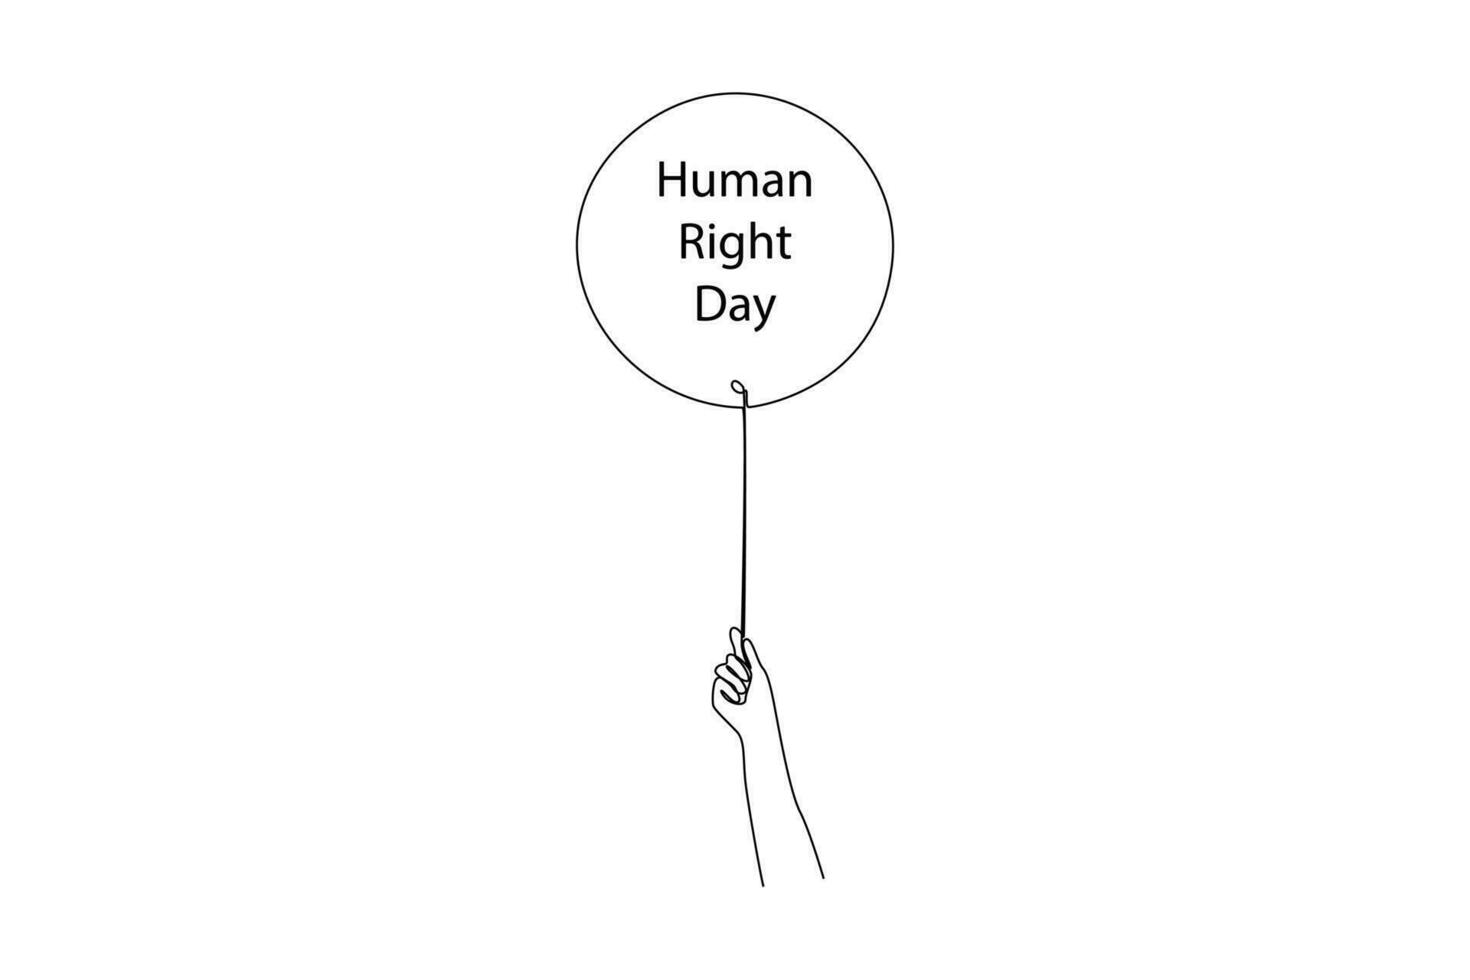 uno continuo linea disegno di dicembre 10, mondo umano diritti giorno concetto. scarabocchio vettore illustrazione nel semplice lineare stile.